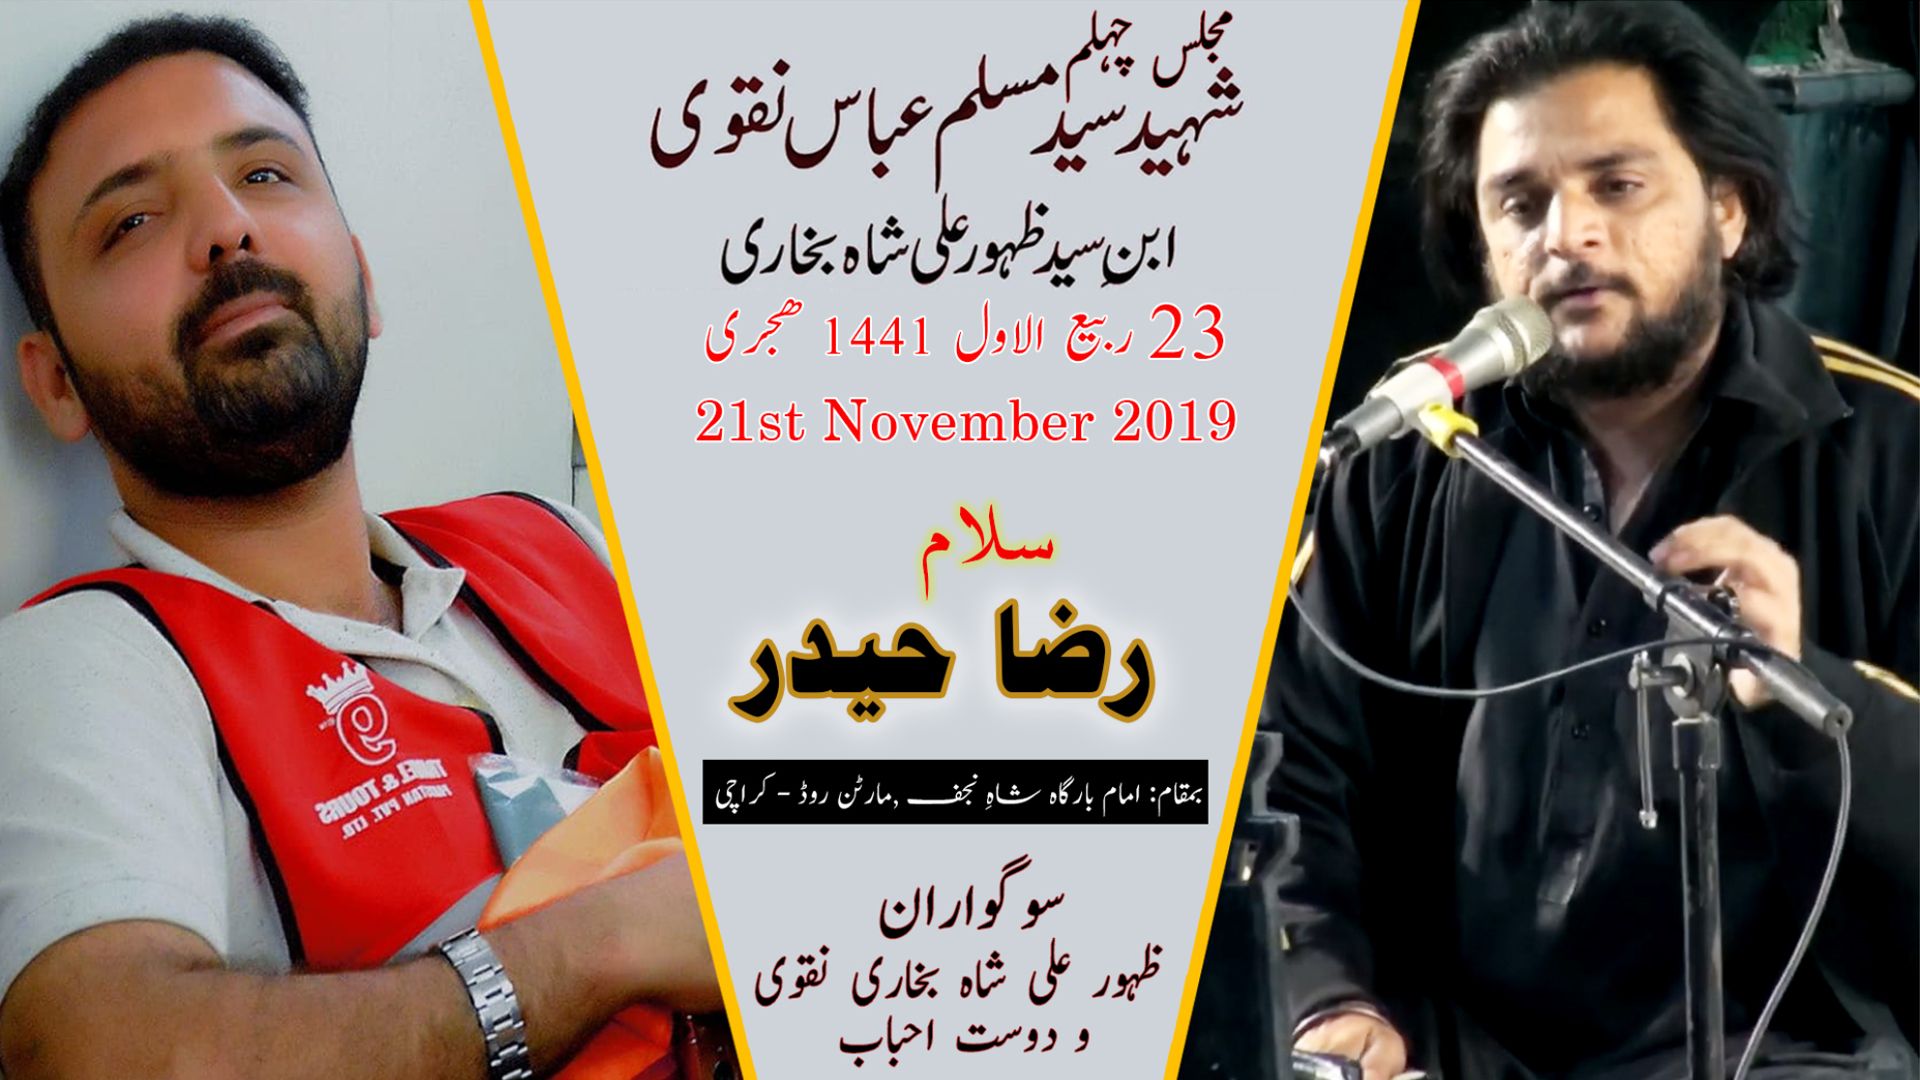 Salam | Raza Haider | 21st November 2019 - Imam Bargah Shah-e-Najaf - Martan Road - Karachi